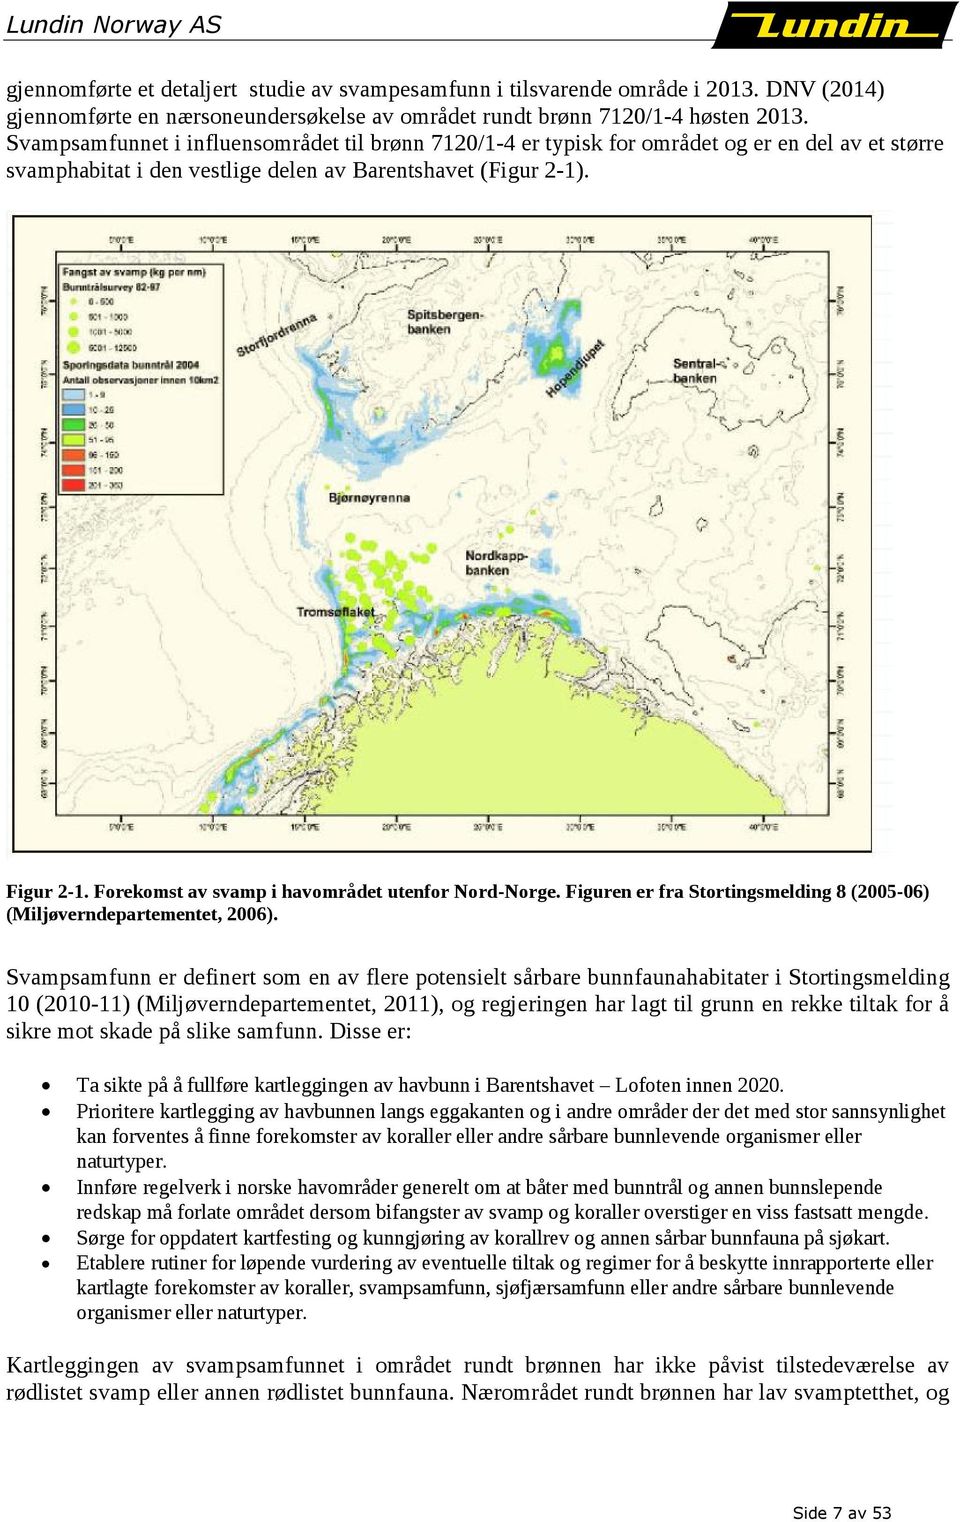 Forekomst av svamp i havområdet utenfor Nord-Norge. Figuren er fra Stortingsmelding 8 (2005-06) (Miljøverndepartementet, 2006).